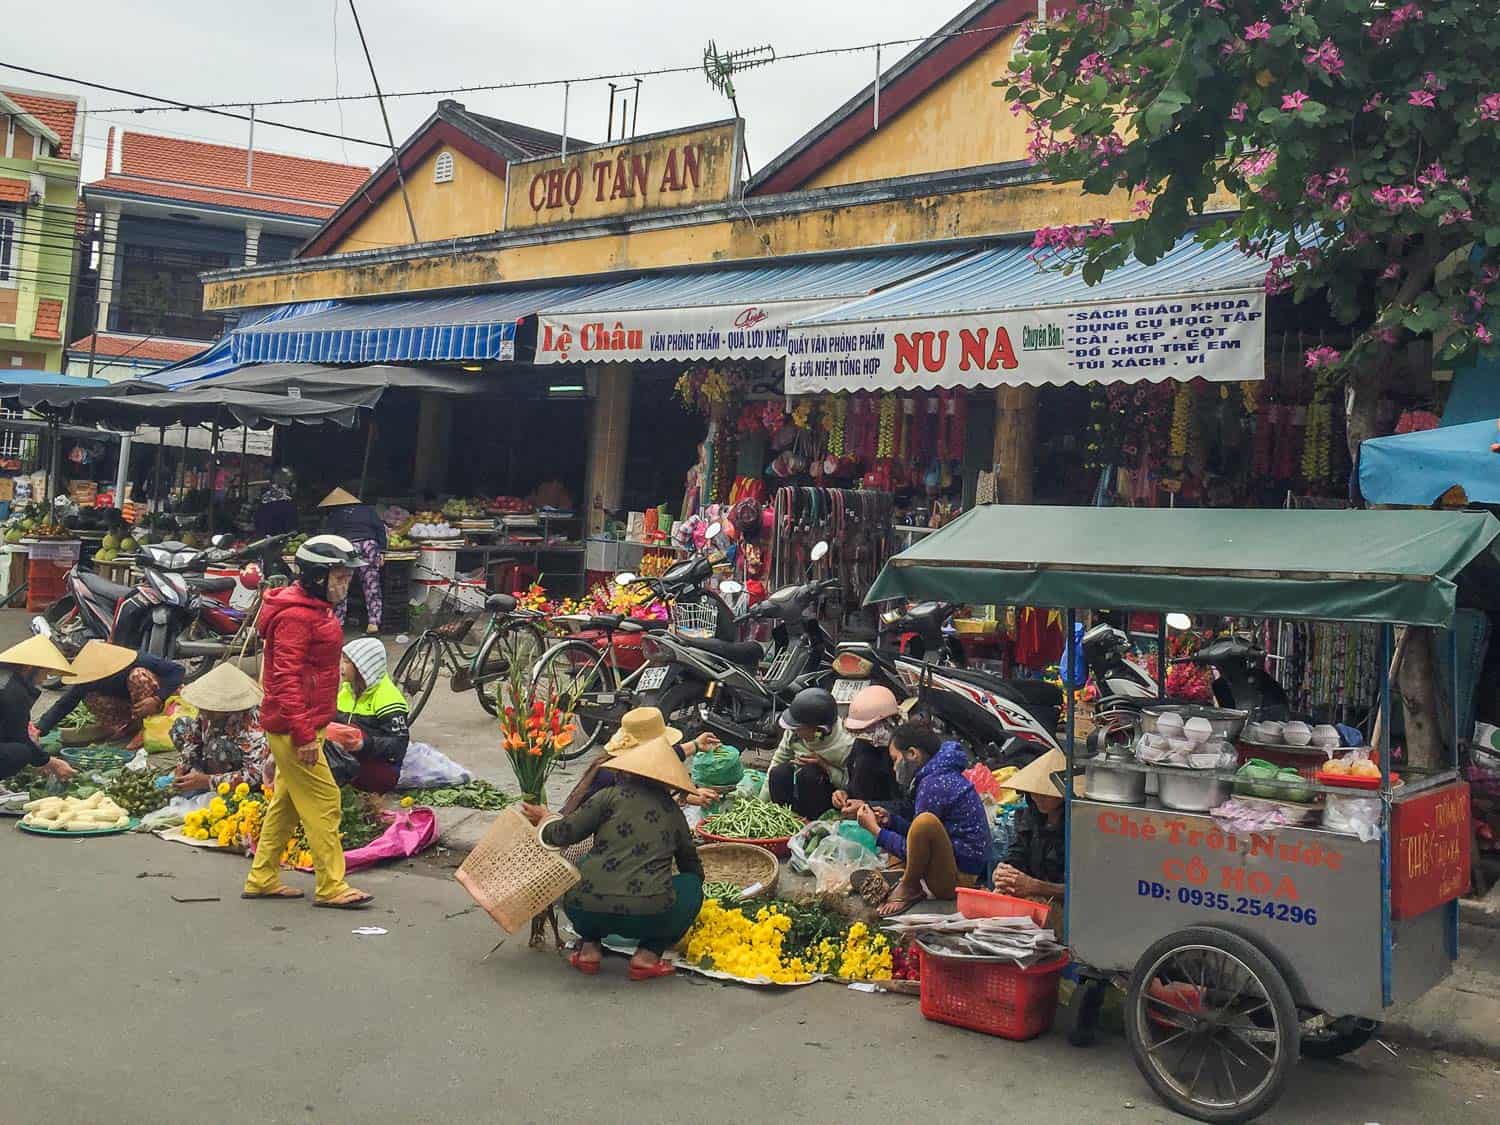 Tan An market, Hoi An